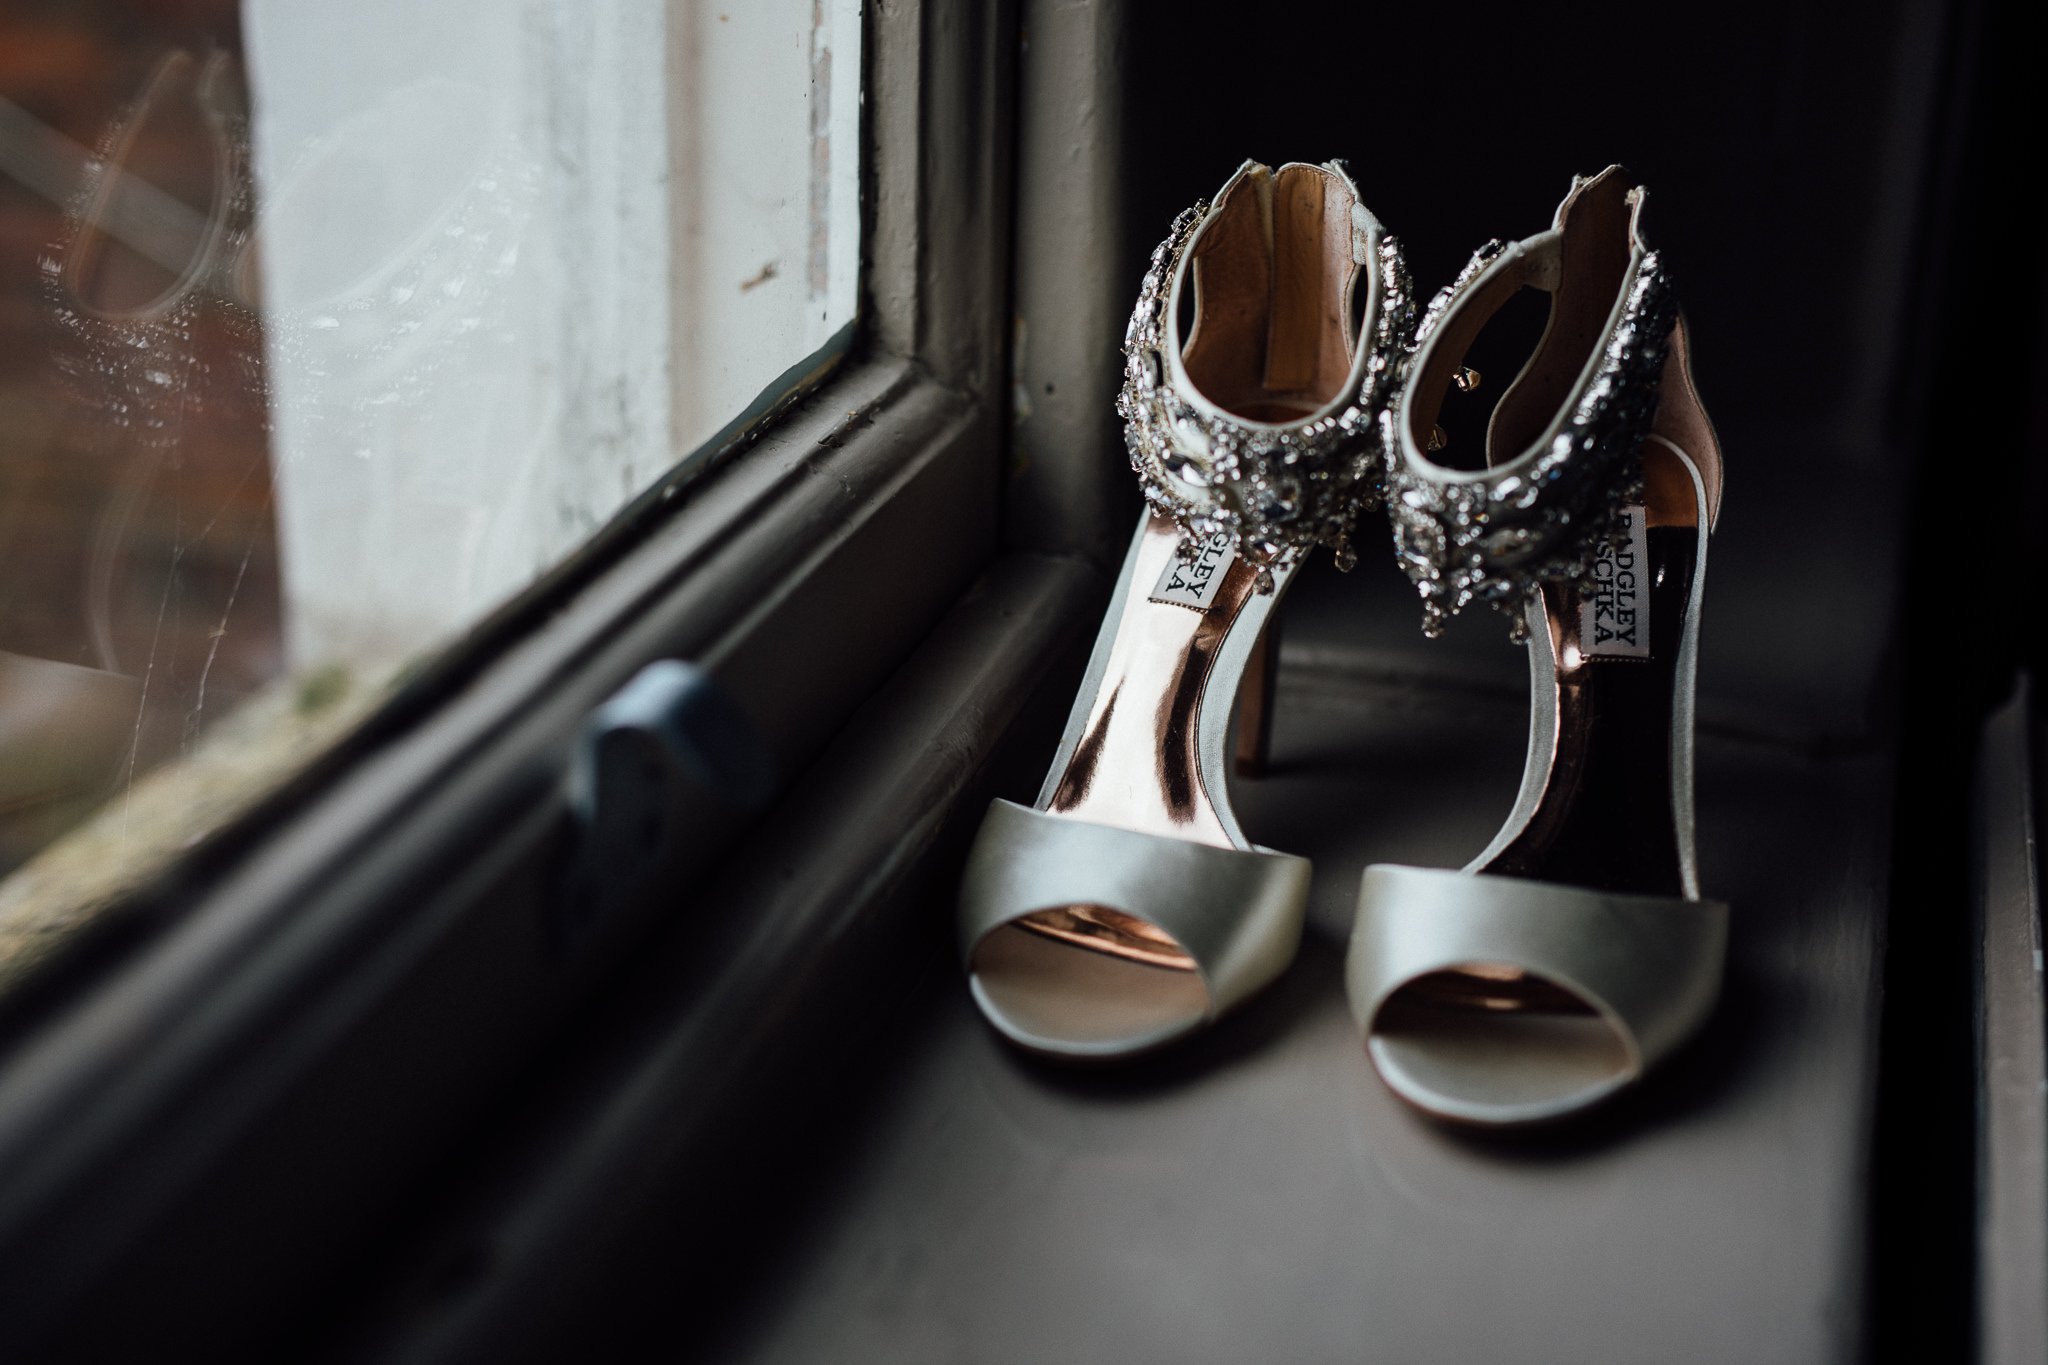  Bride’s wedding shoes 